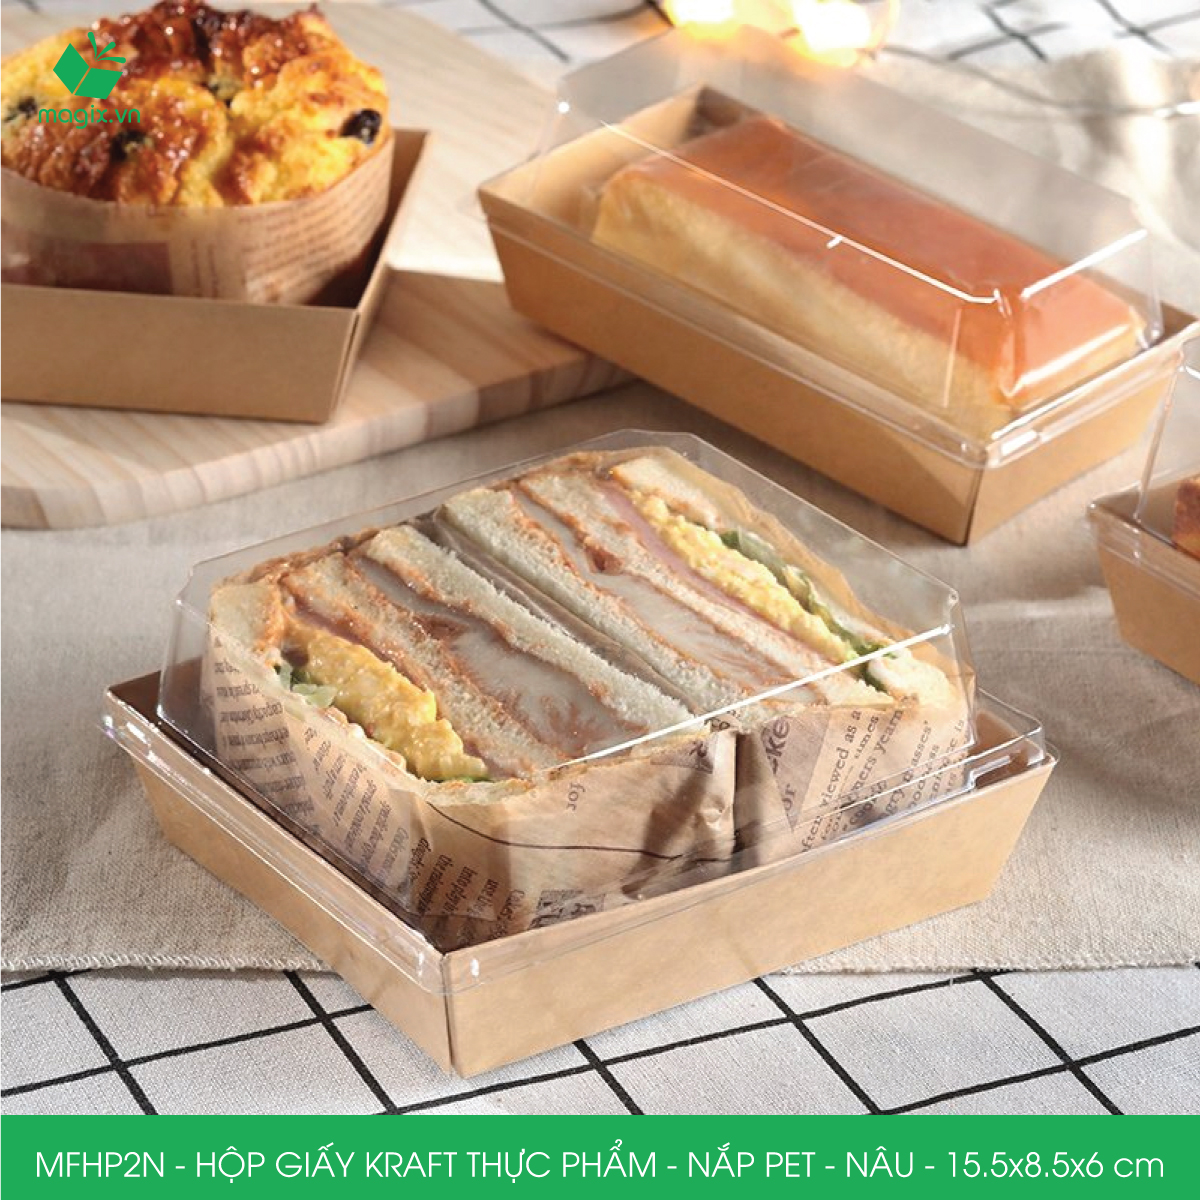 MFHP2N - 15.5x8.5x6 cm - 25 hộp giấy kraft thực phẩm màu nâu nắp Pet, hộp giấy chữ nhật đựng thức ăn, hộp bánh nắp trong